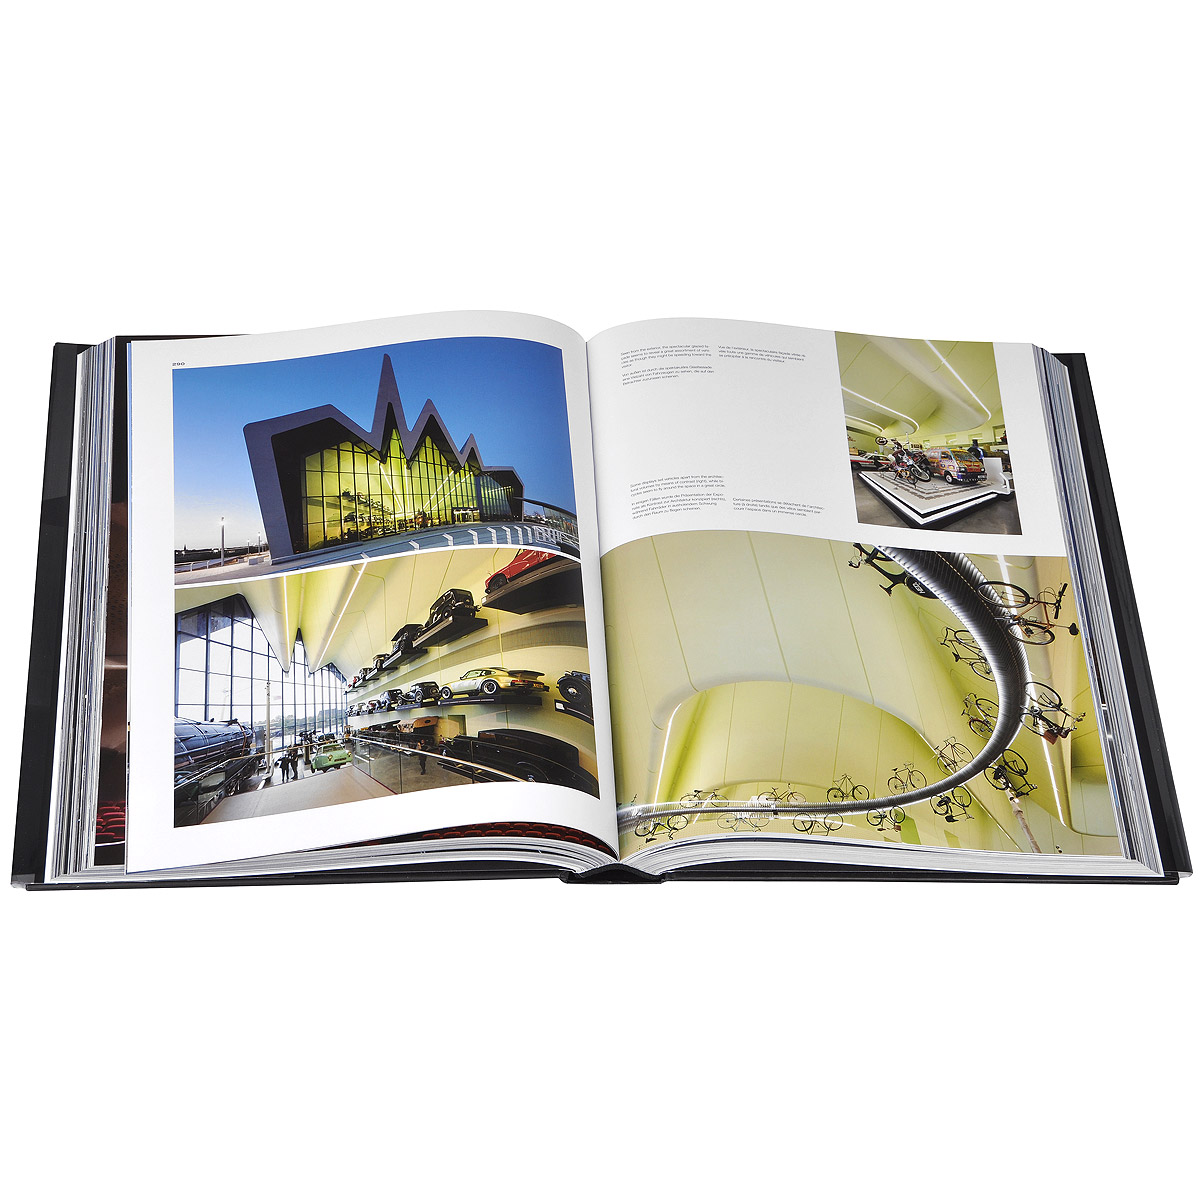 Hadid: Complite Works 1979-2013